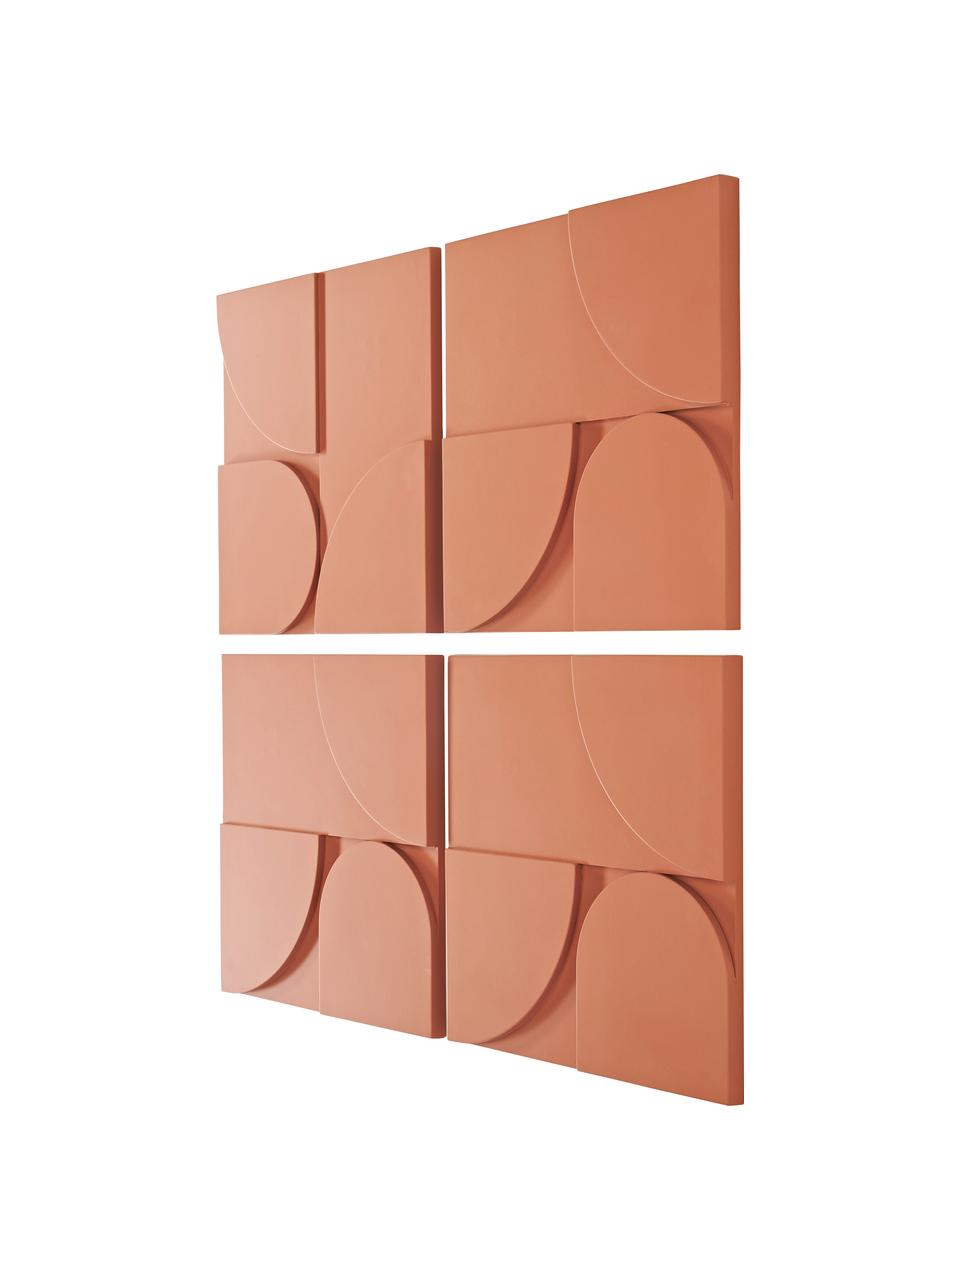 Komplet dekoracji ściennych z drewna Massimo, 4 elem., Płyta pilśniowa (MDF), Pomarańczowy, S 80 x W 80 cm